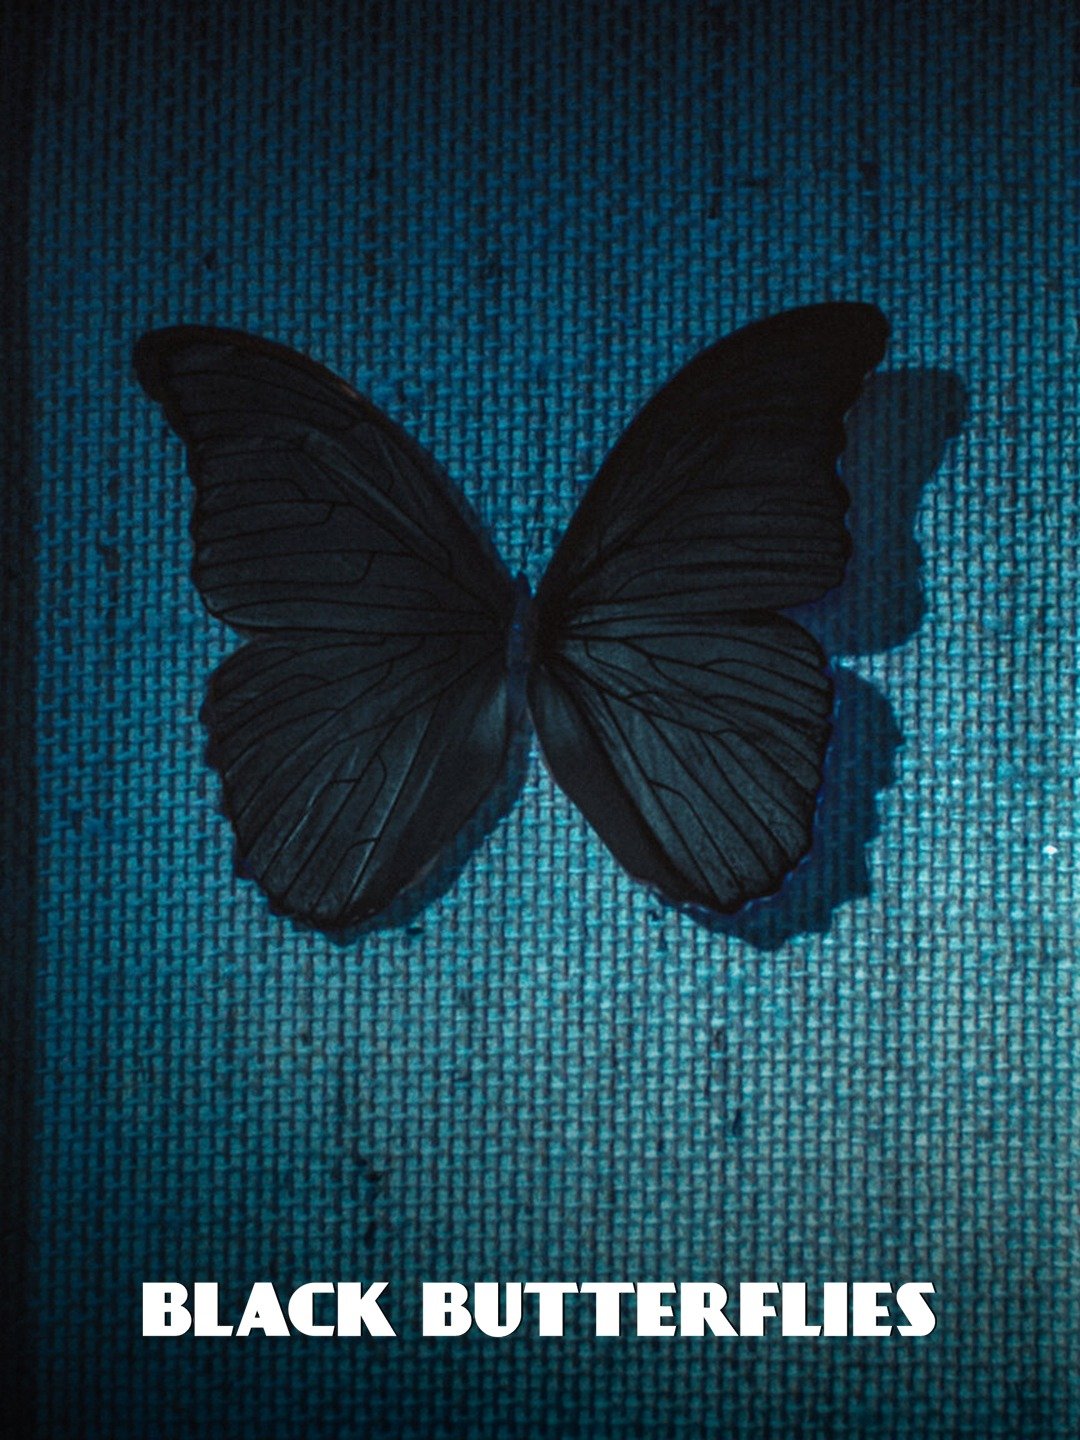 Ebony Butterfly Porn Star - Black Butterflies - Rotten Tomatoes